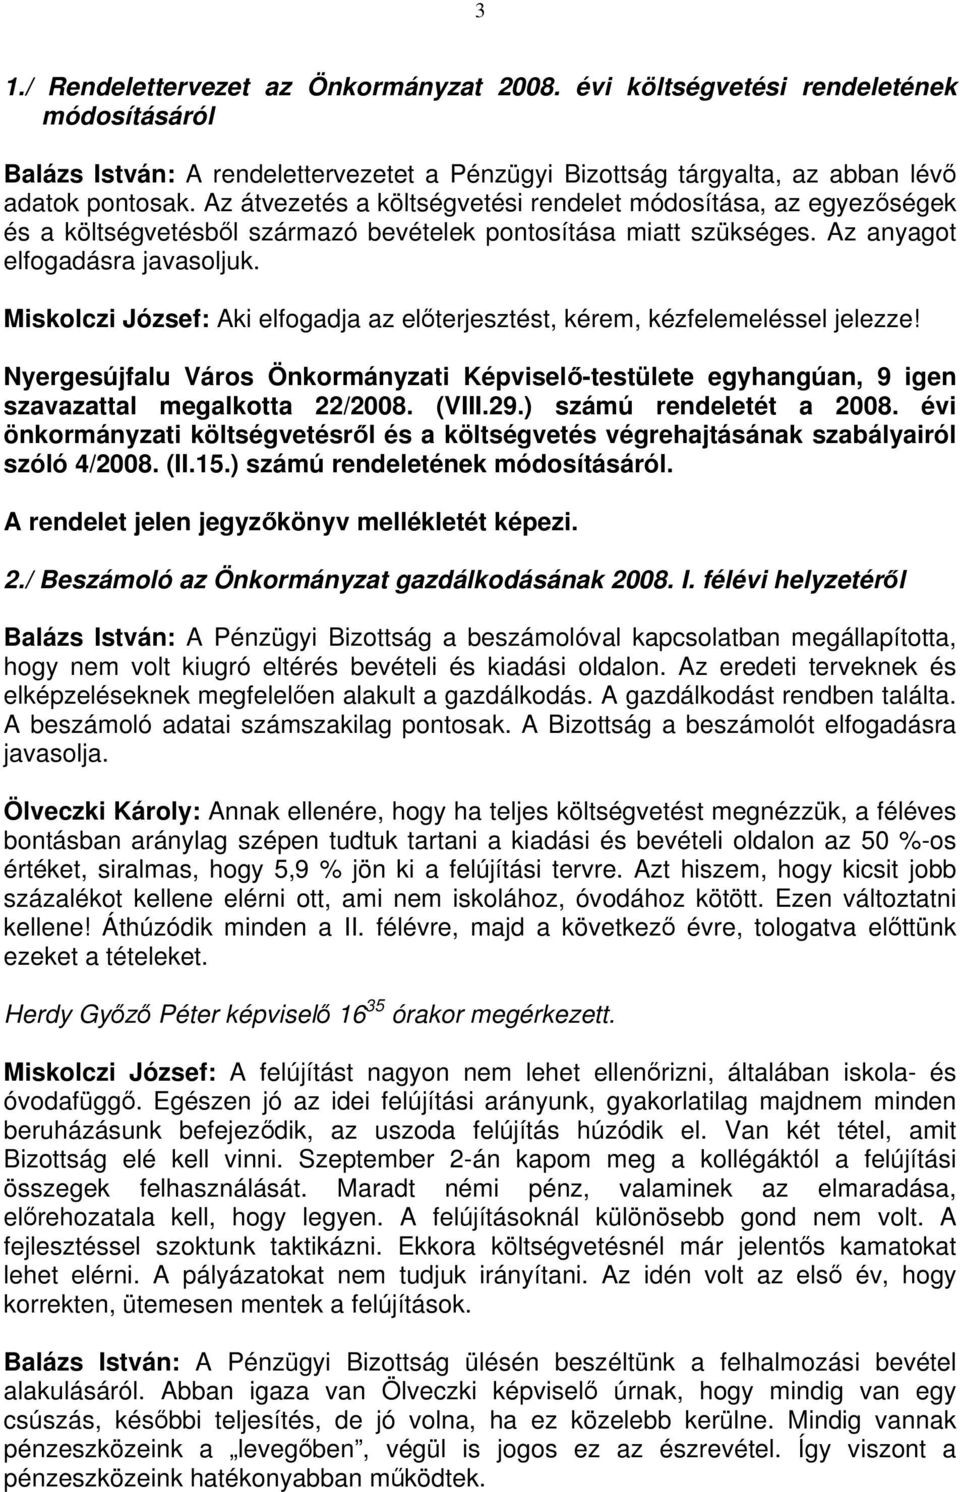 Miskolczi József: Aki elfogadja az előterjesztést, kérem, kézfelemeléssel jelezze! egyhangúan, 9 igen szavazattal megalkotta 22/2008. (VIII.29.) számú rendeletét a 2008.